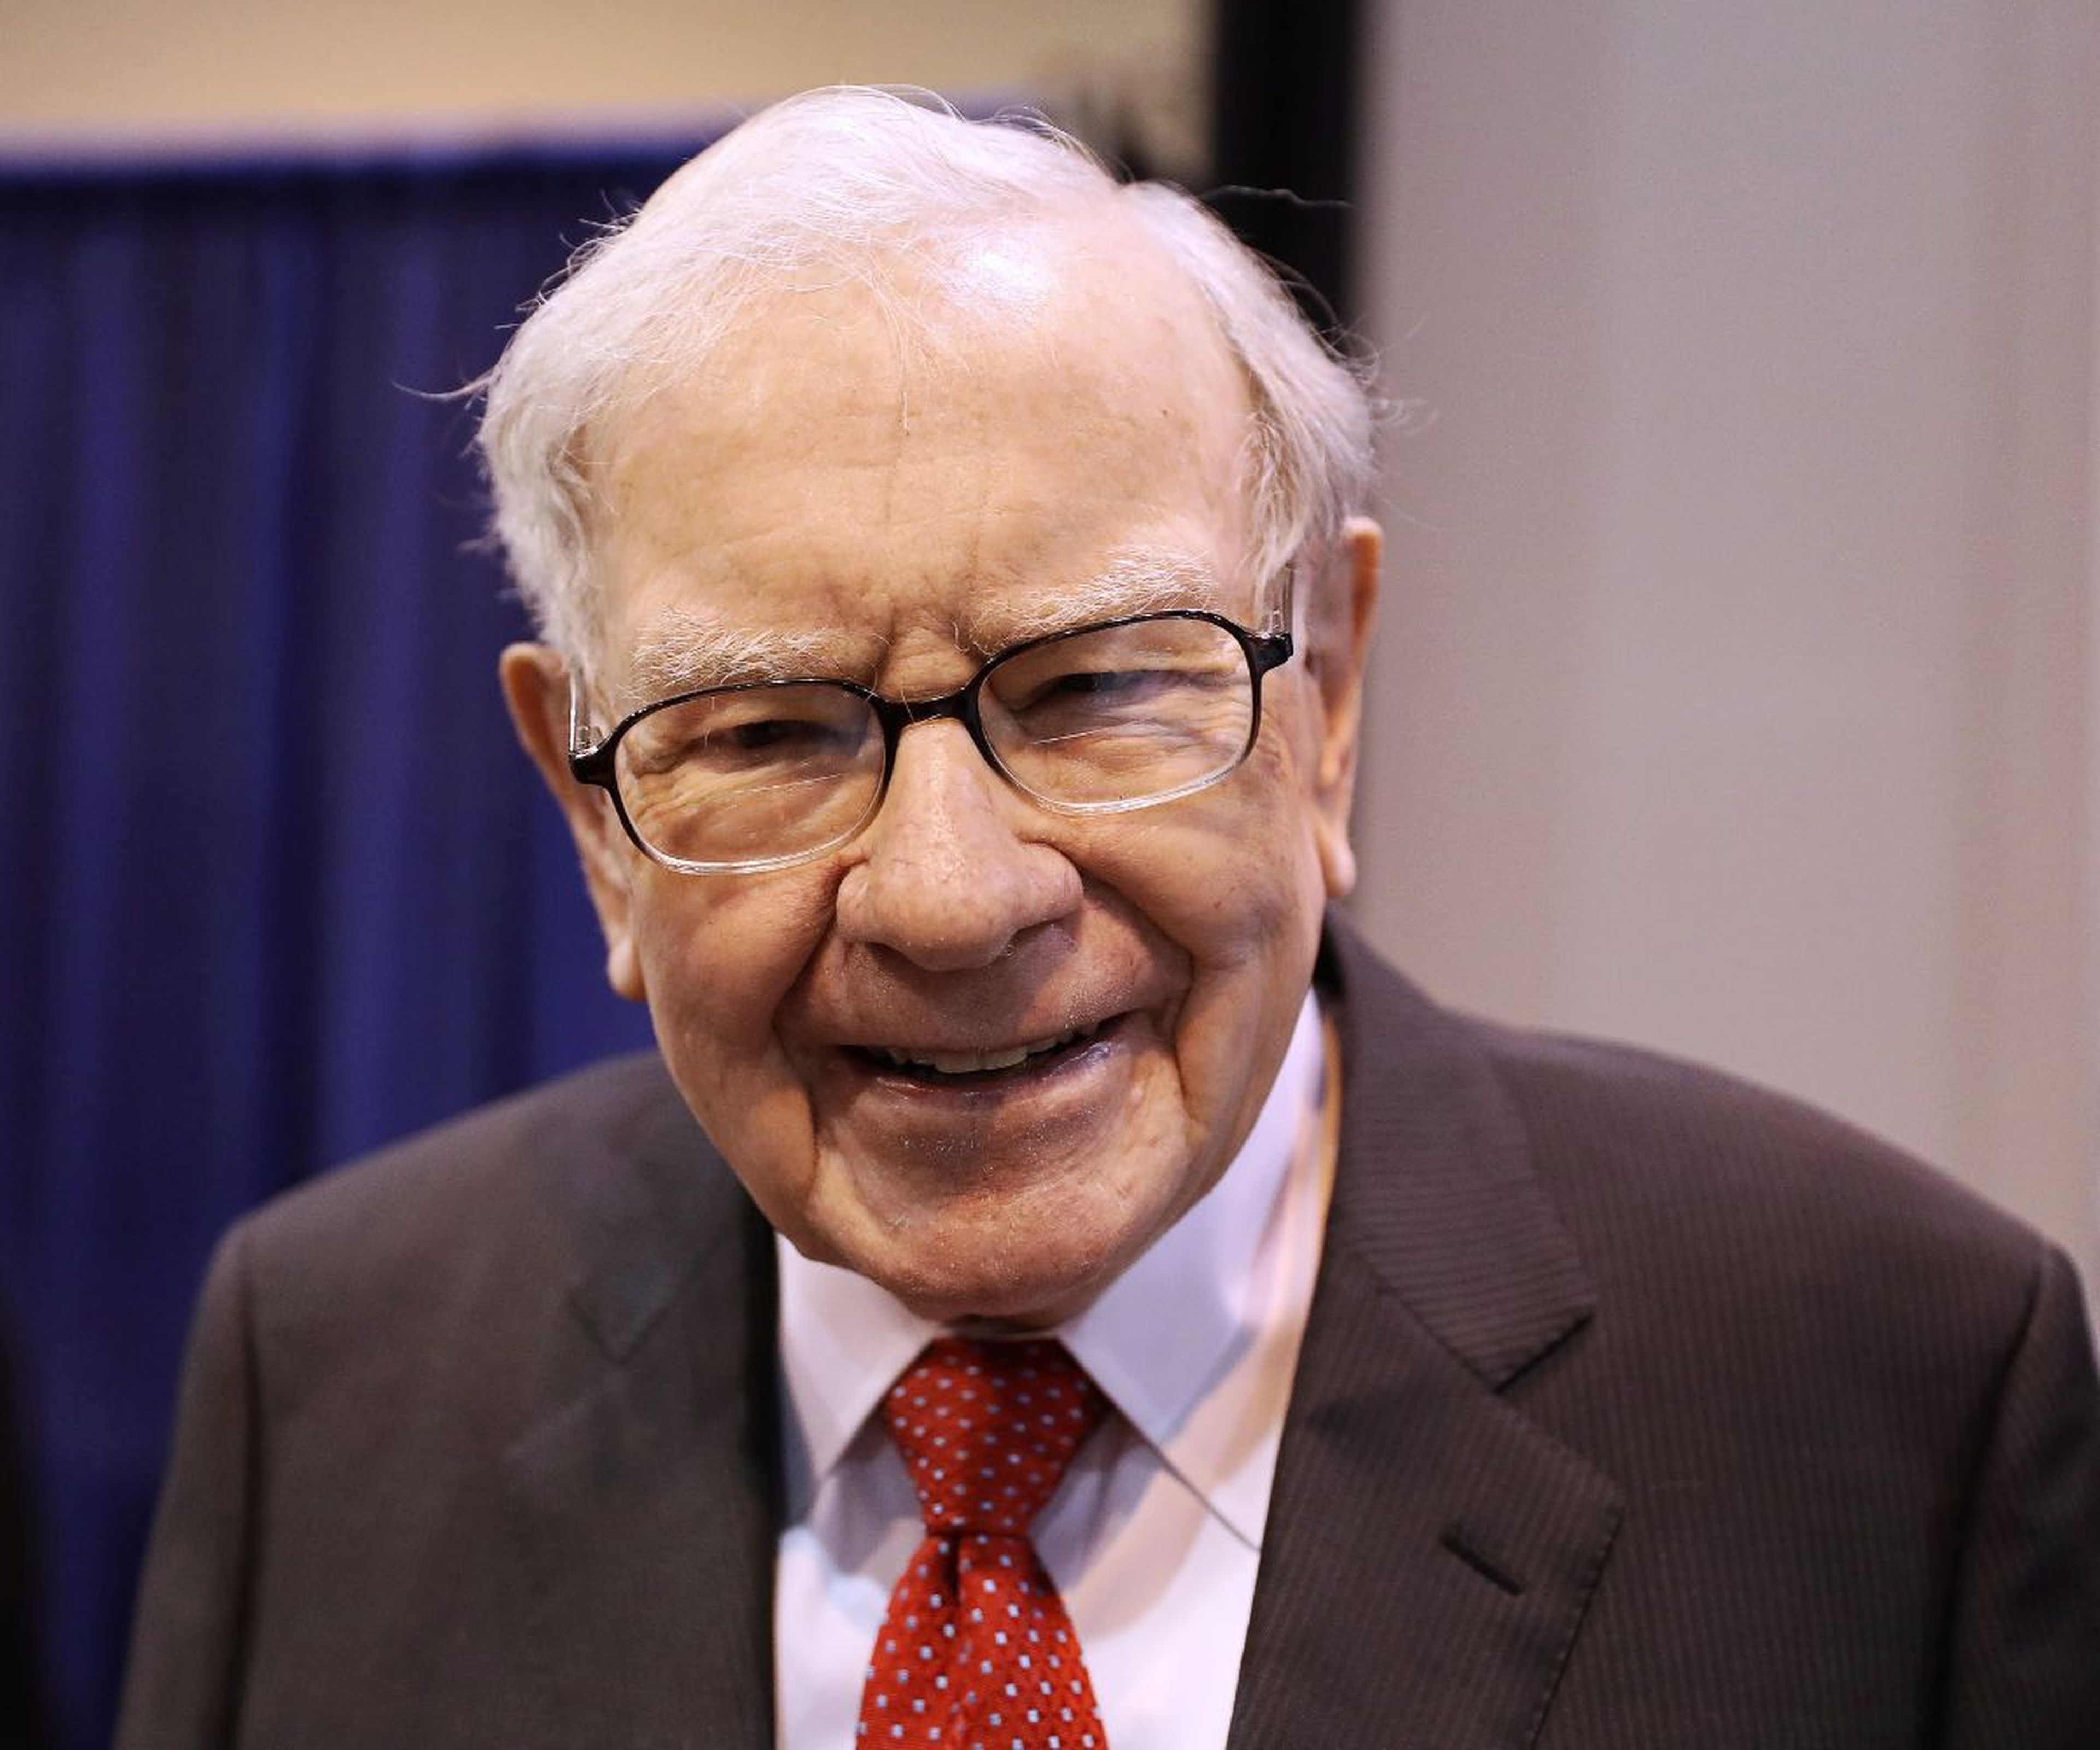 El inversor Warren Buffett.